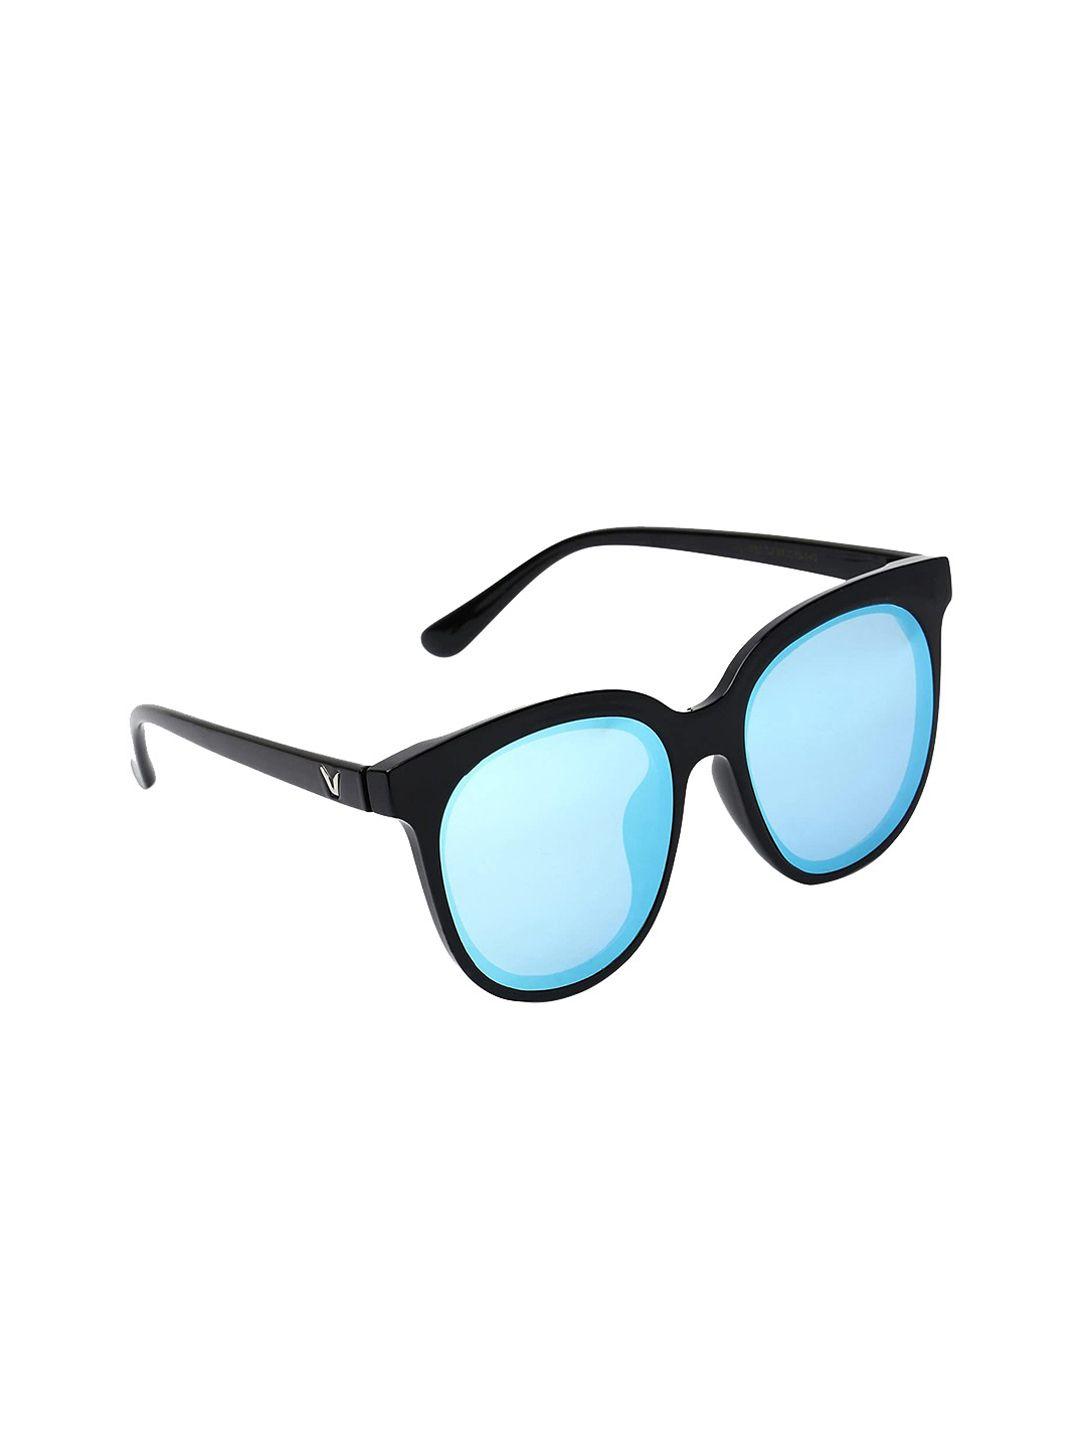 marc louis unisex blue lens & black square sunglasses marc louis 4013-c2 blue